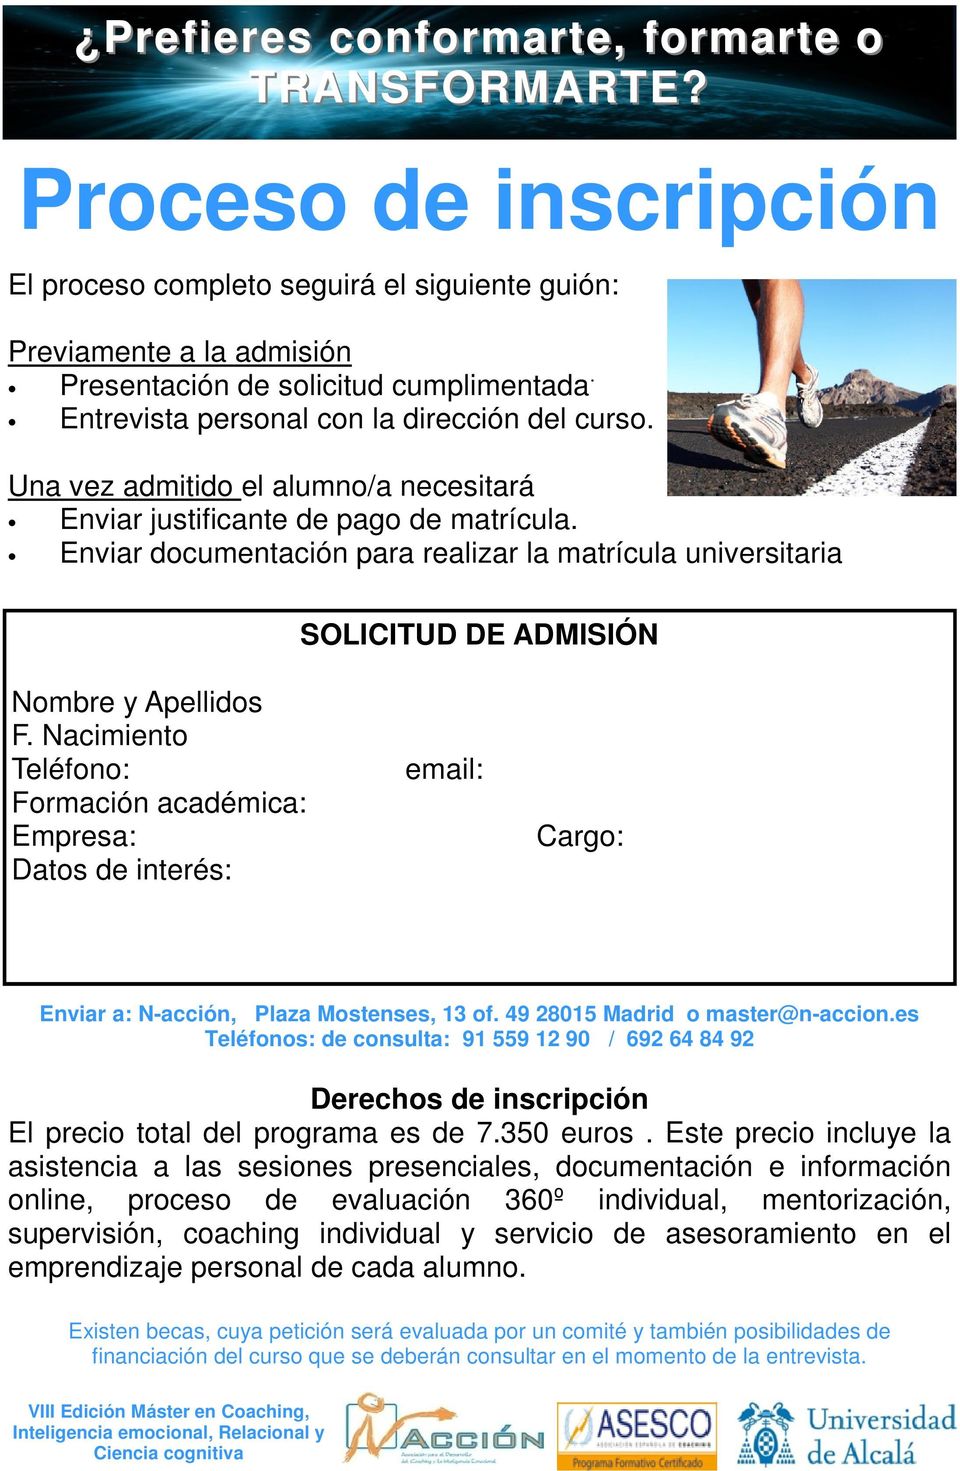 Nacimiento Teléfono: Formación académica: Empresa: Datos de interés: email: Cargo: Enviar a: N-acción, Plaza Mostenses, 13 of. 49 28015 Madrid o master@n-accion.